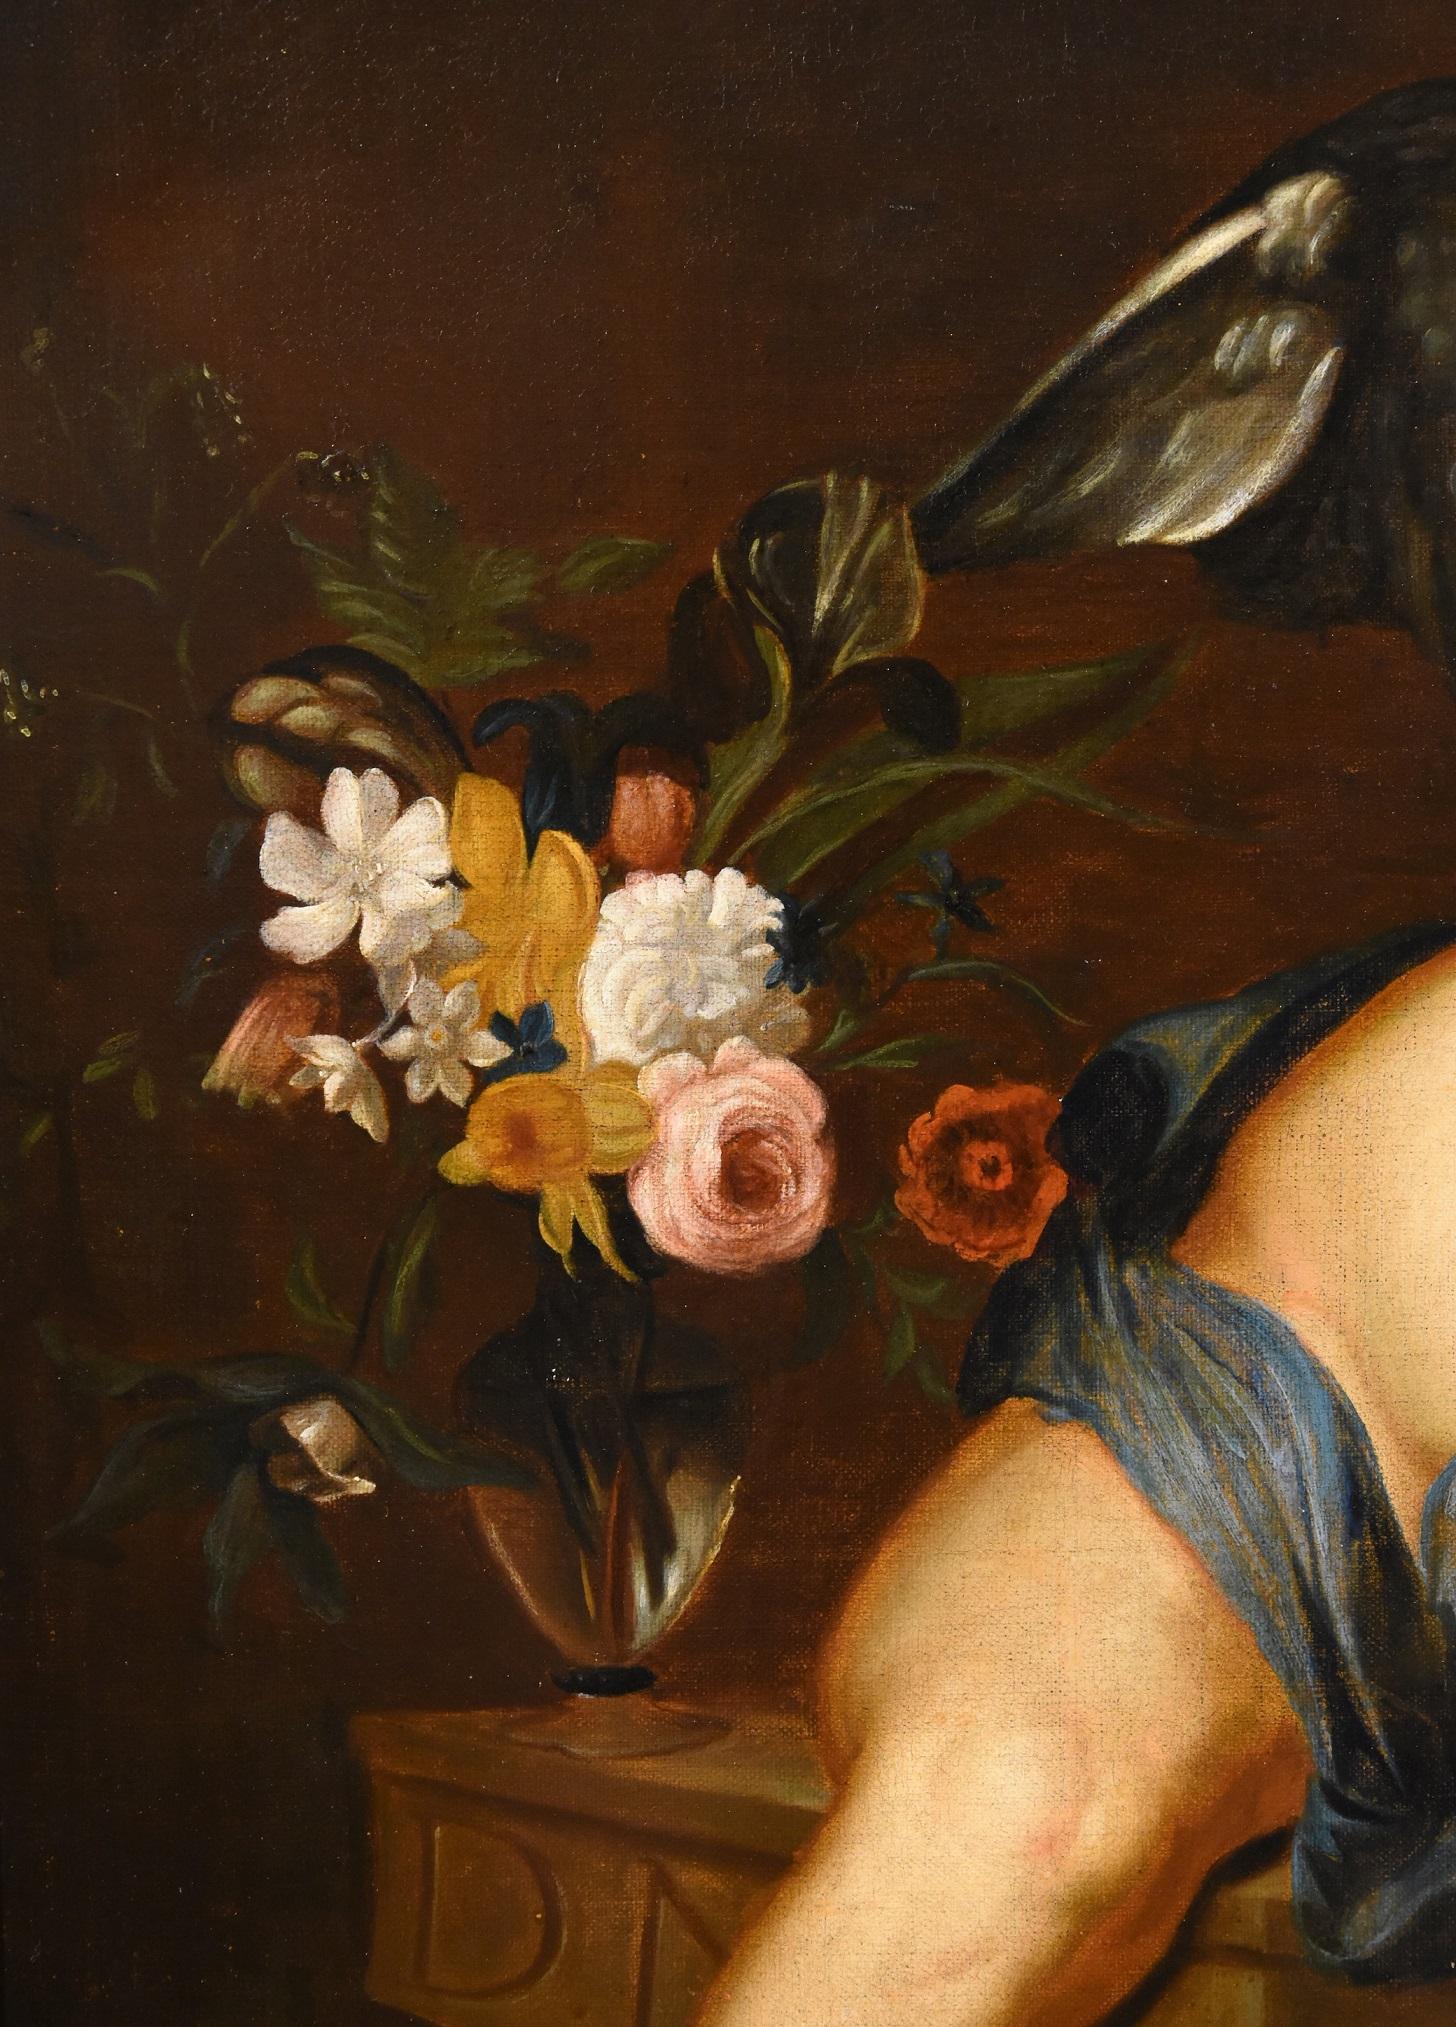 Quellinus Allegory - Peinture de coiffeuse - Huile sur toile - Grand maître flamand 17ème siècle  - Marron Portrait Painting par Erasmus Quellinus II (Antwerp 1607 - 1672)